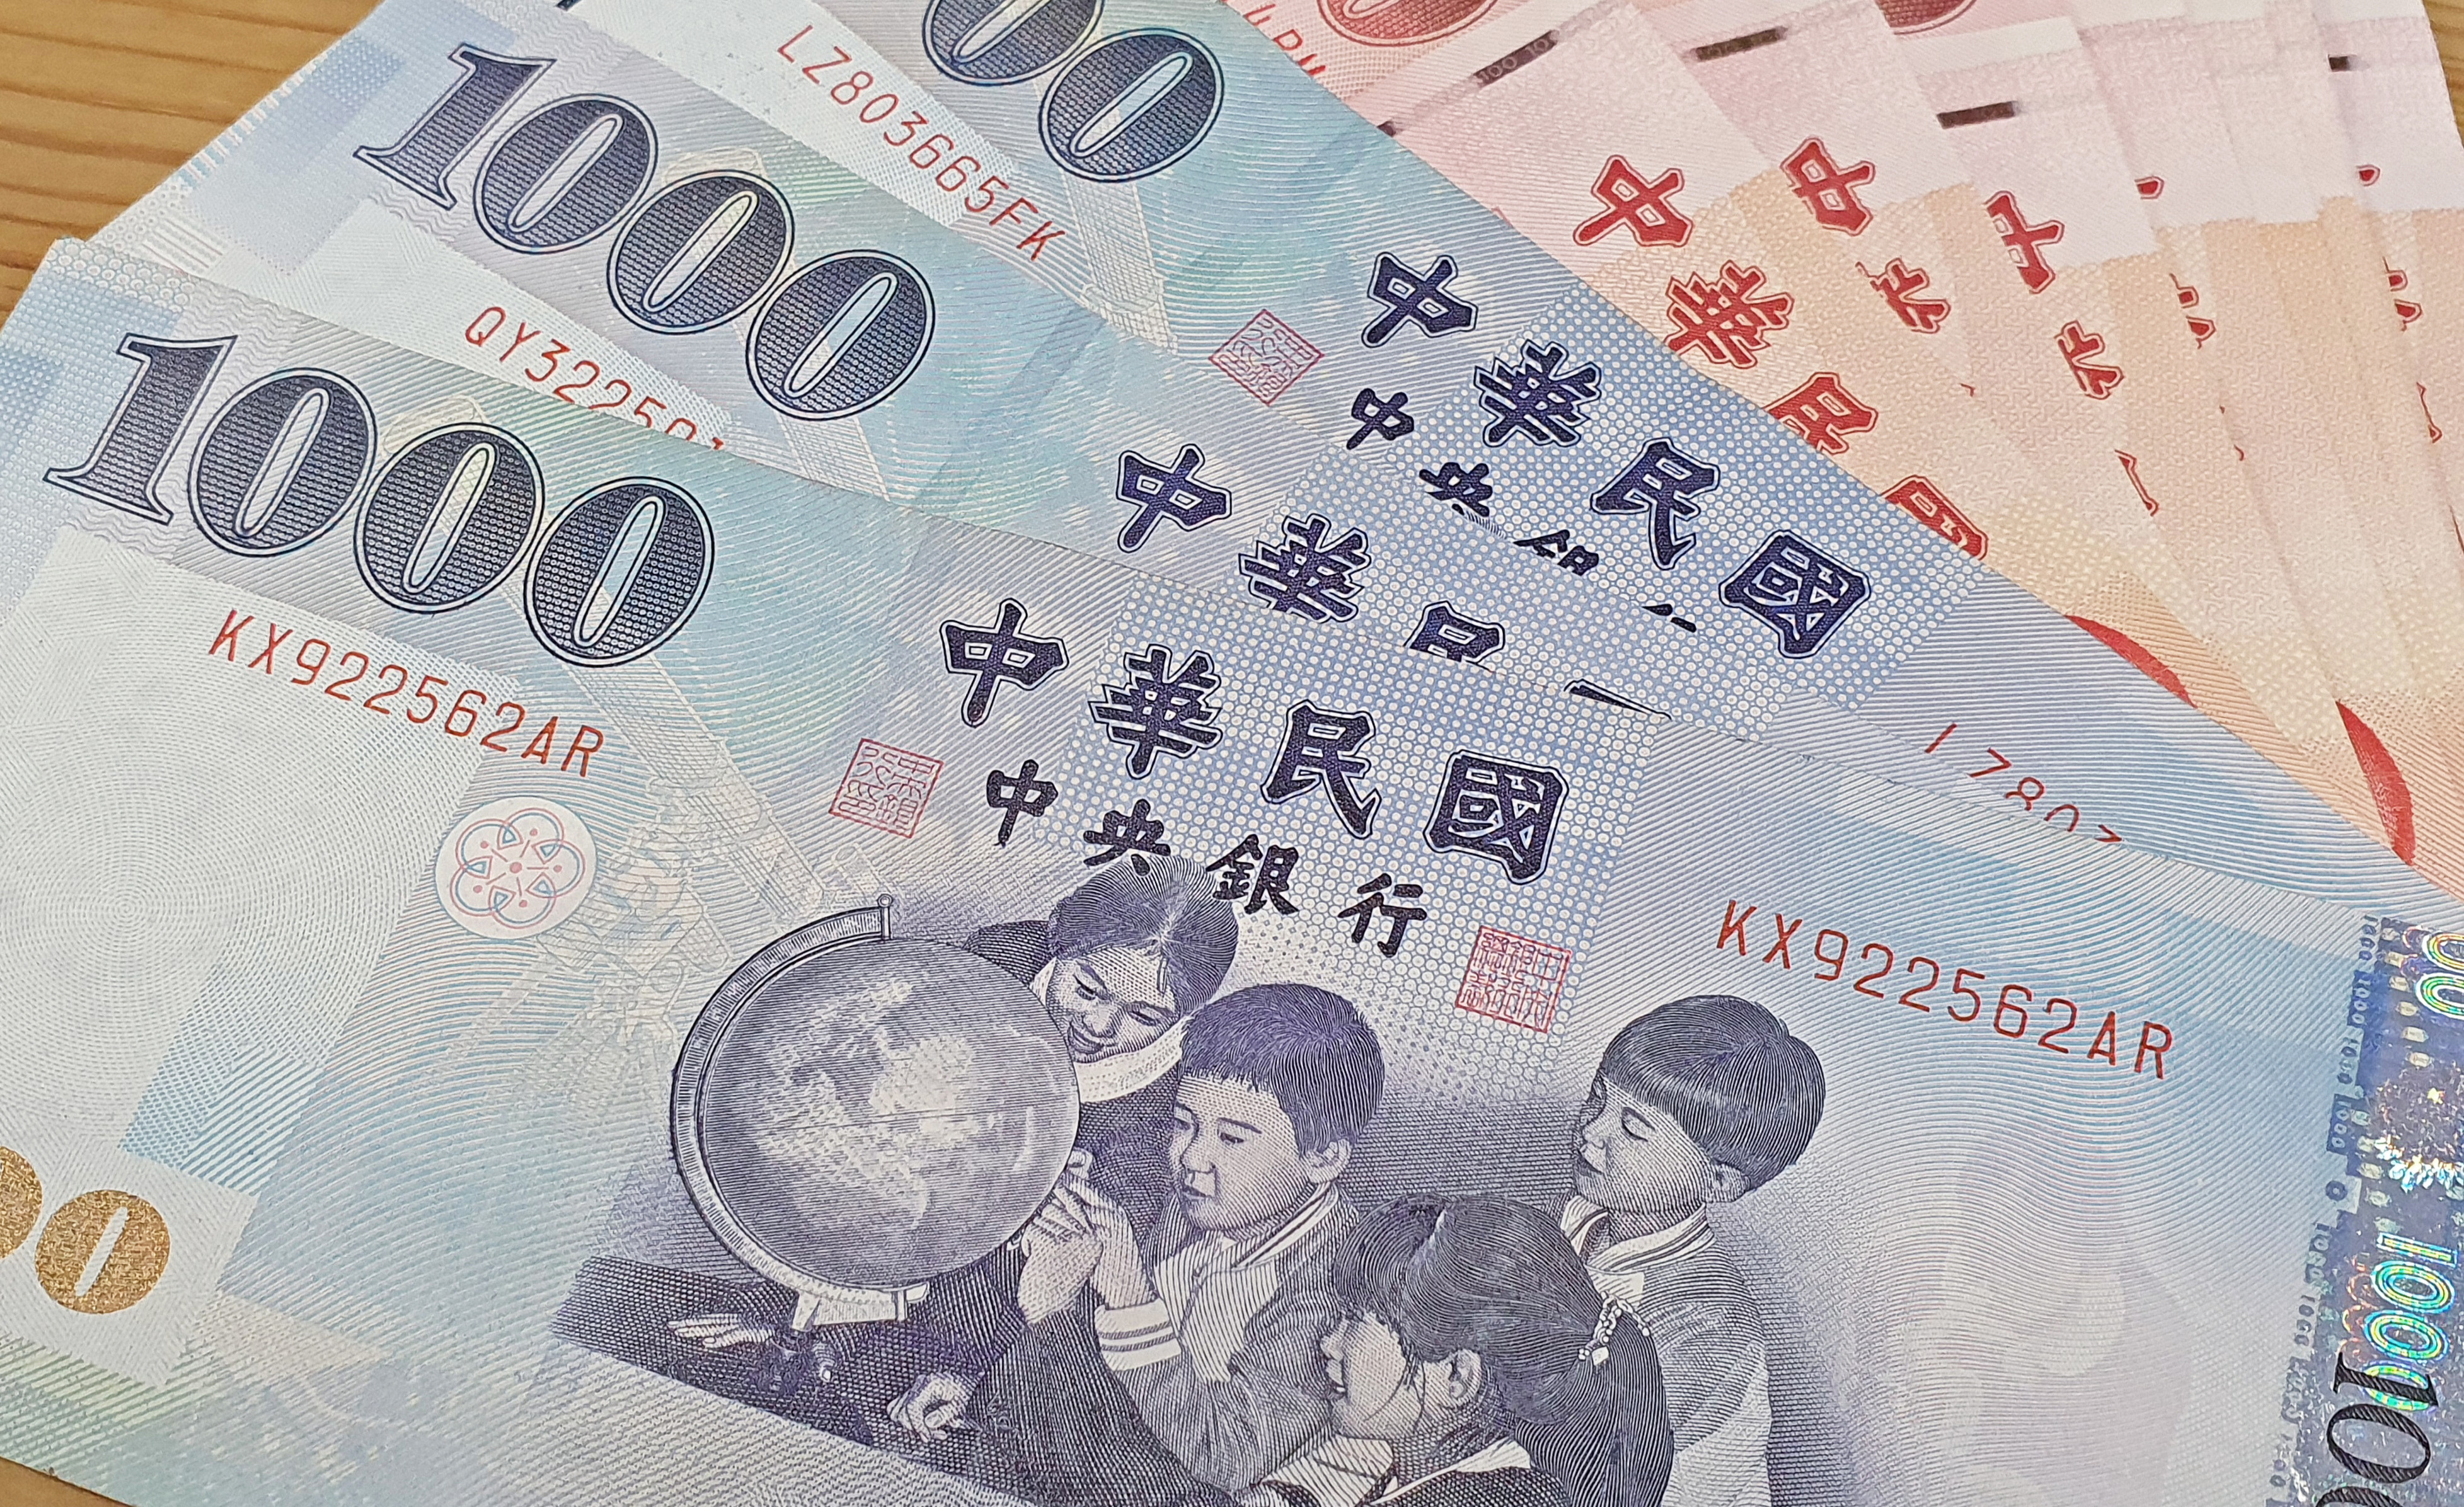 照片中提到了T00 10、中華民國、LZ803665FK，包含了新台幣、新台幣、台灣、貨幣、錢